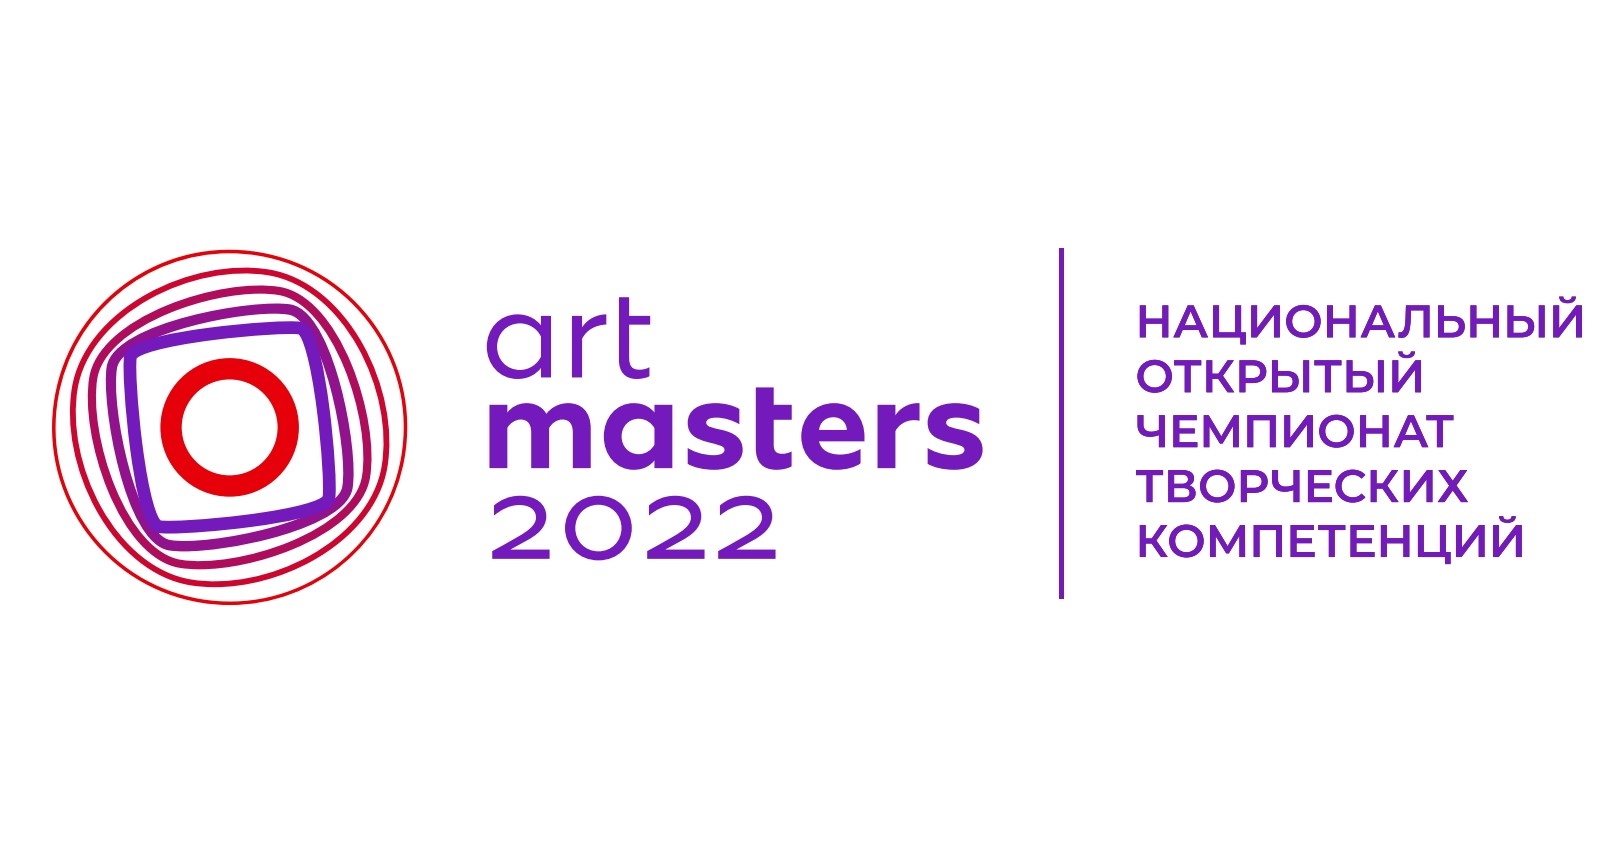 26 апреля стартует прием заявок на участие в Национальном открытом чемпионате в сфере творческих компетенций ArtMasters 2022.